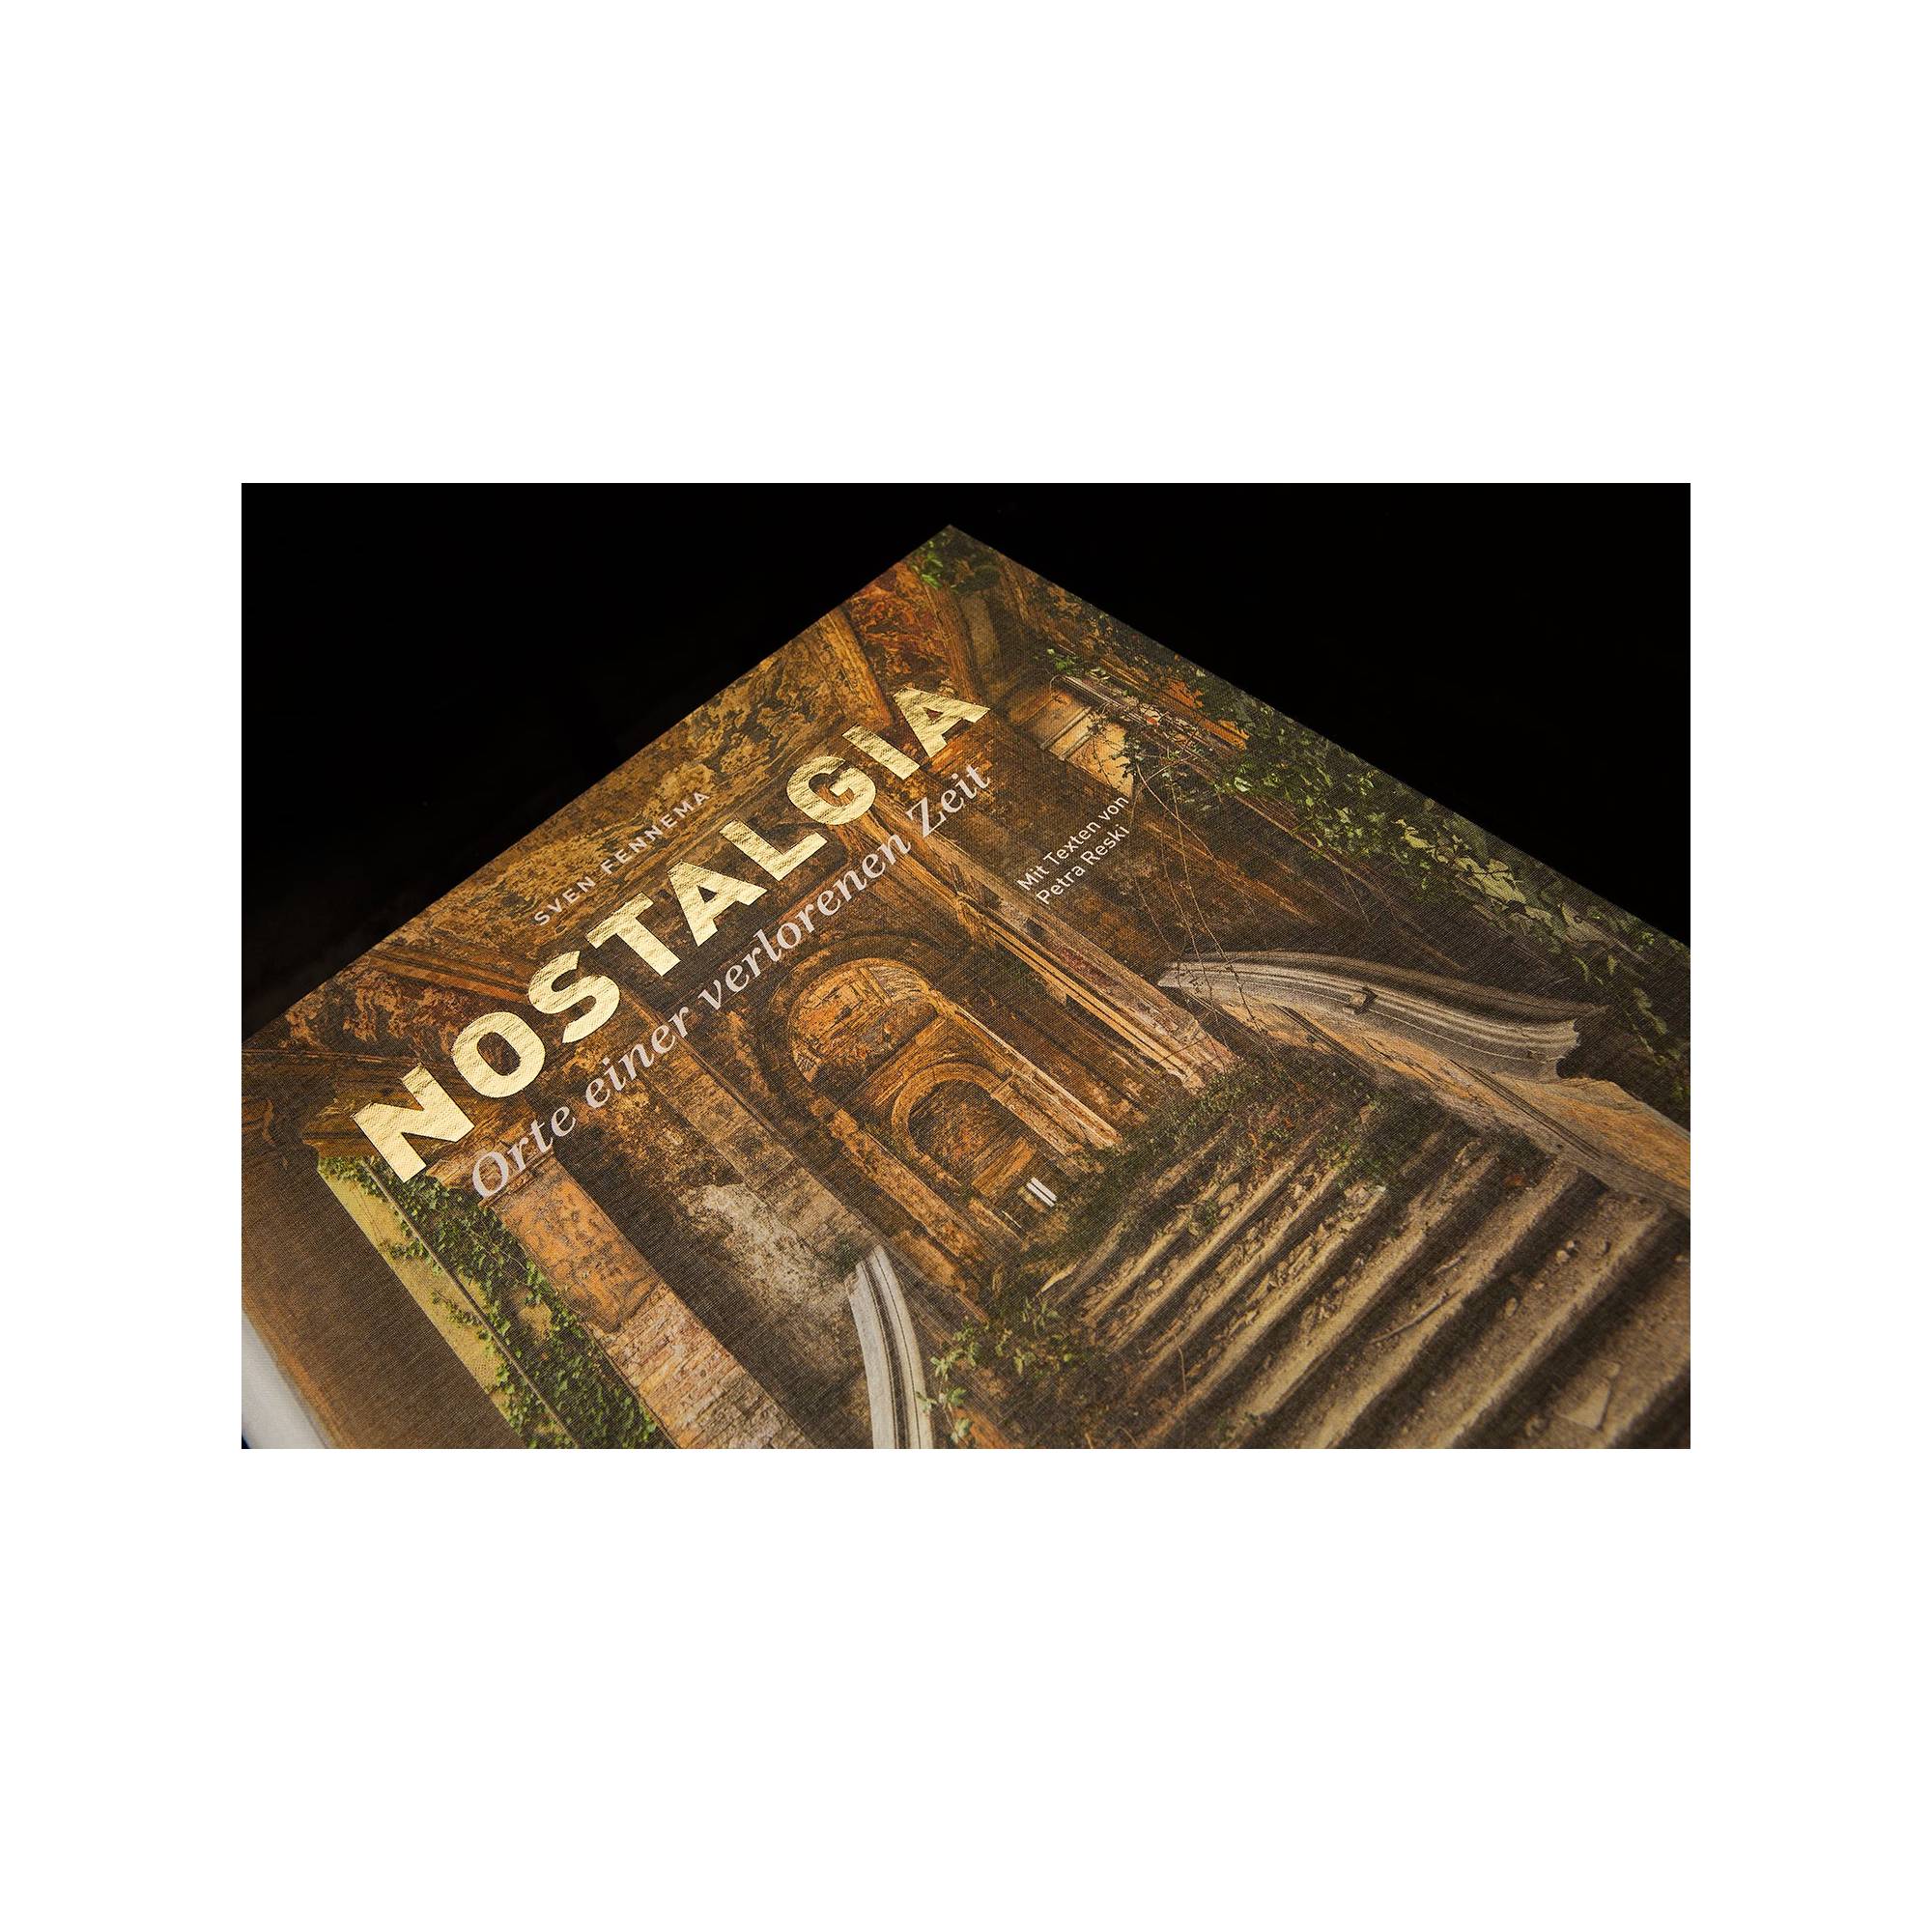 NOSTALGIA - „Orte einer verlorenen Zeit“